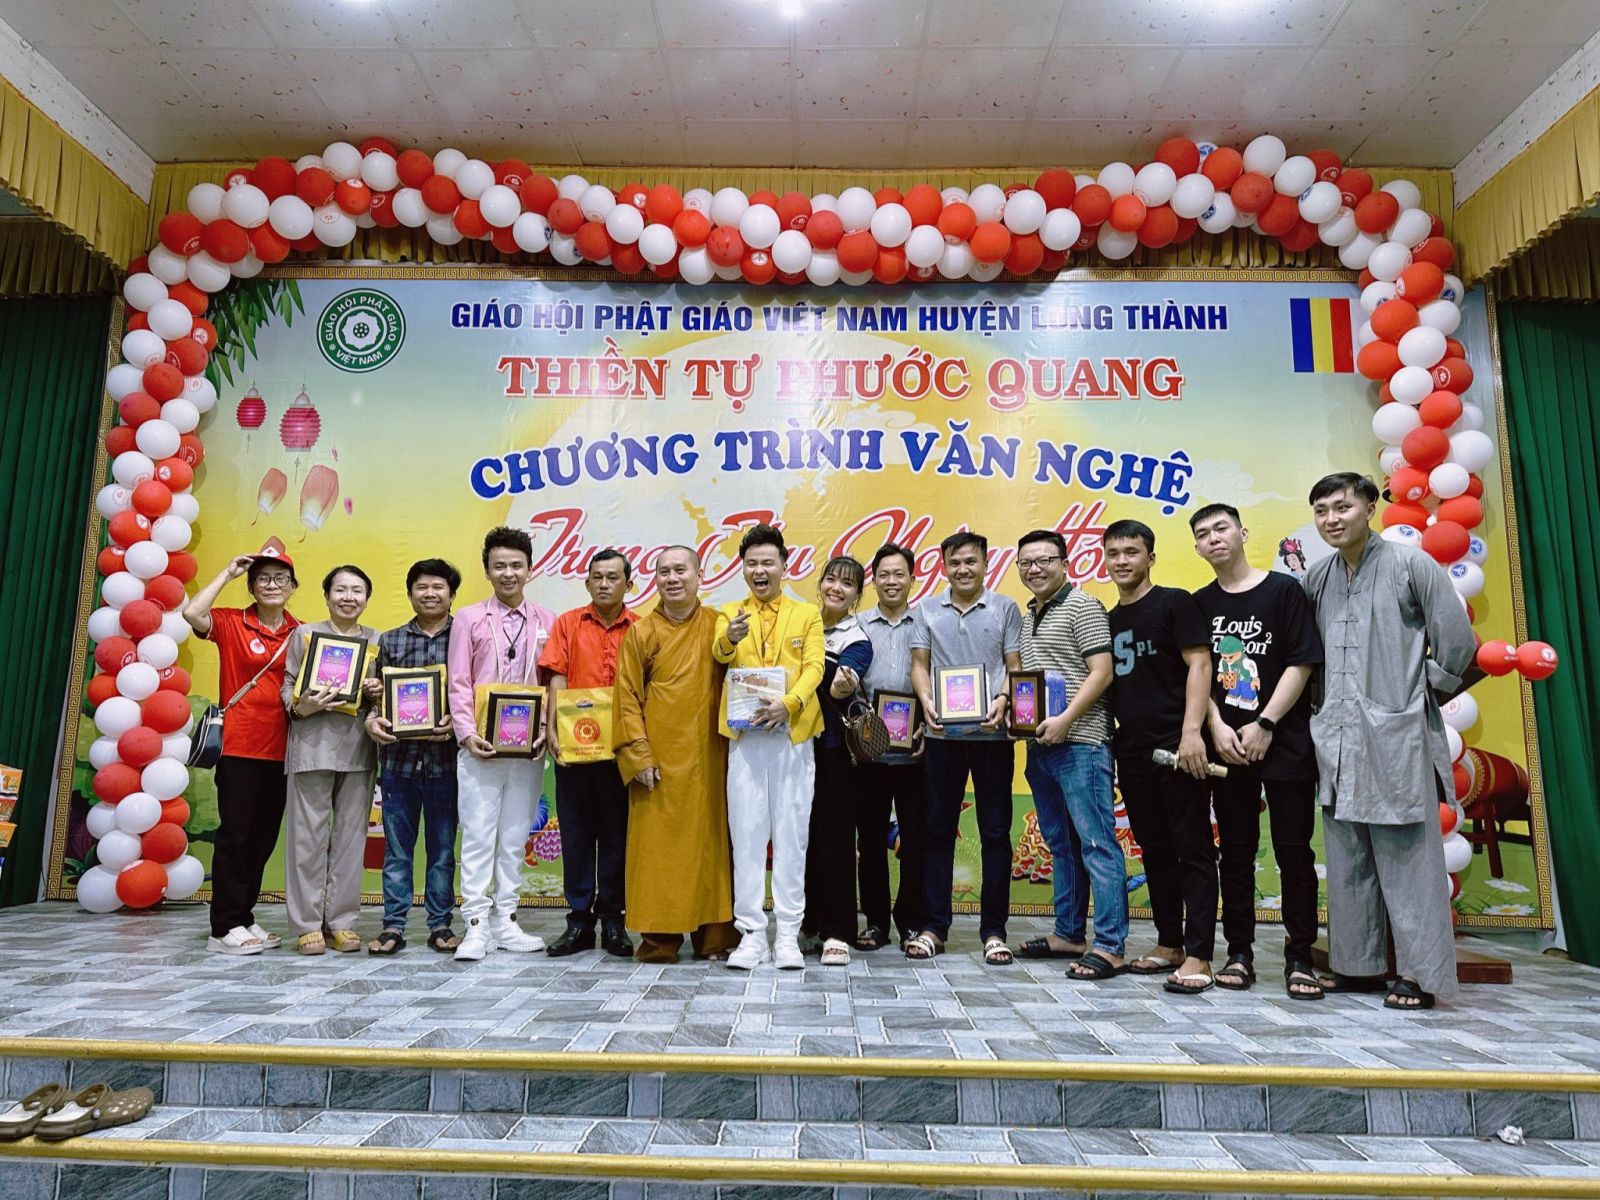 Long Thành: thiền tự Phước Quang đã tổ chức đêm Trung Thu Ngày Hội cho gần 1200 em thiếu nhi.